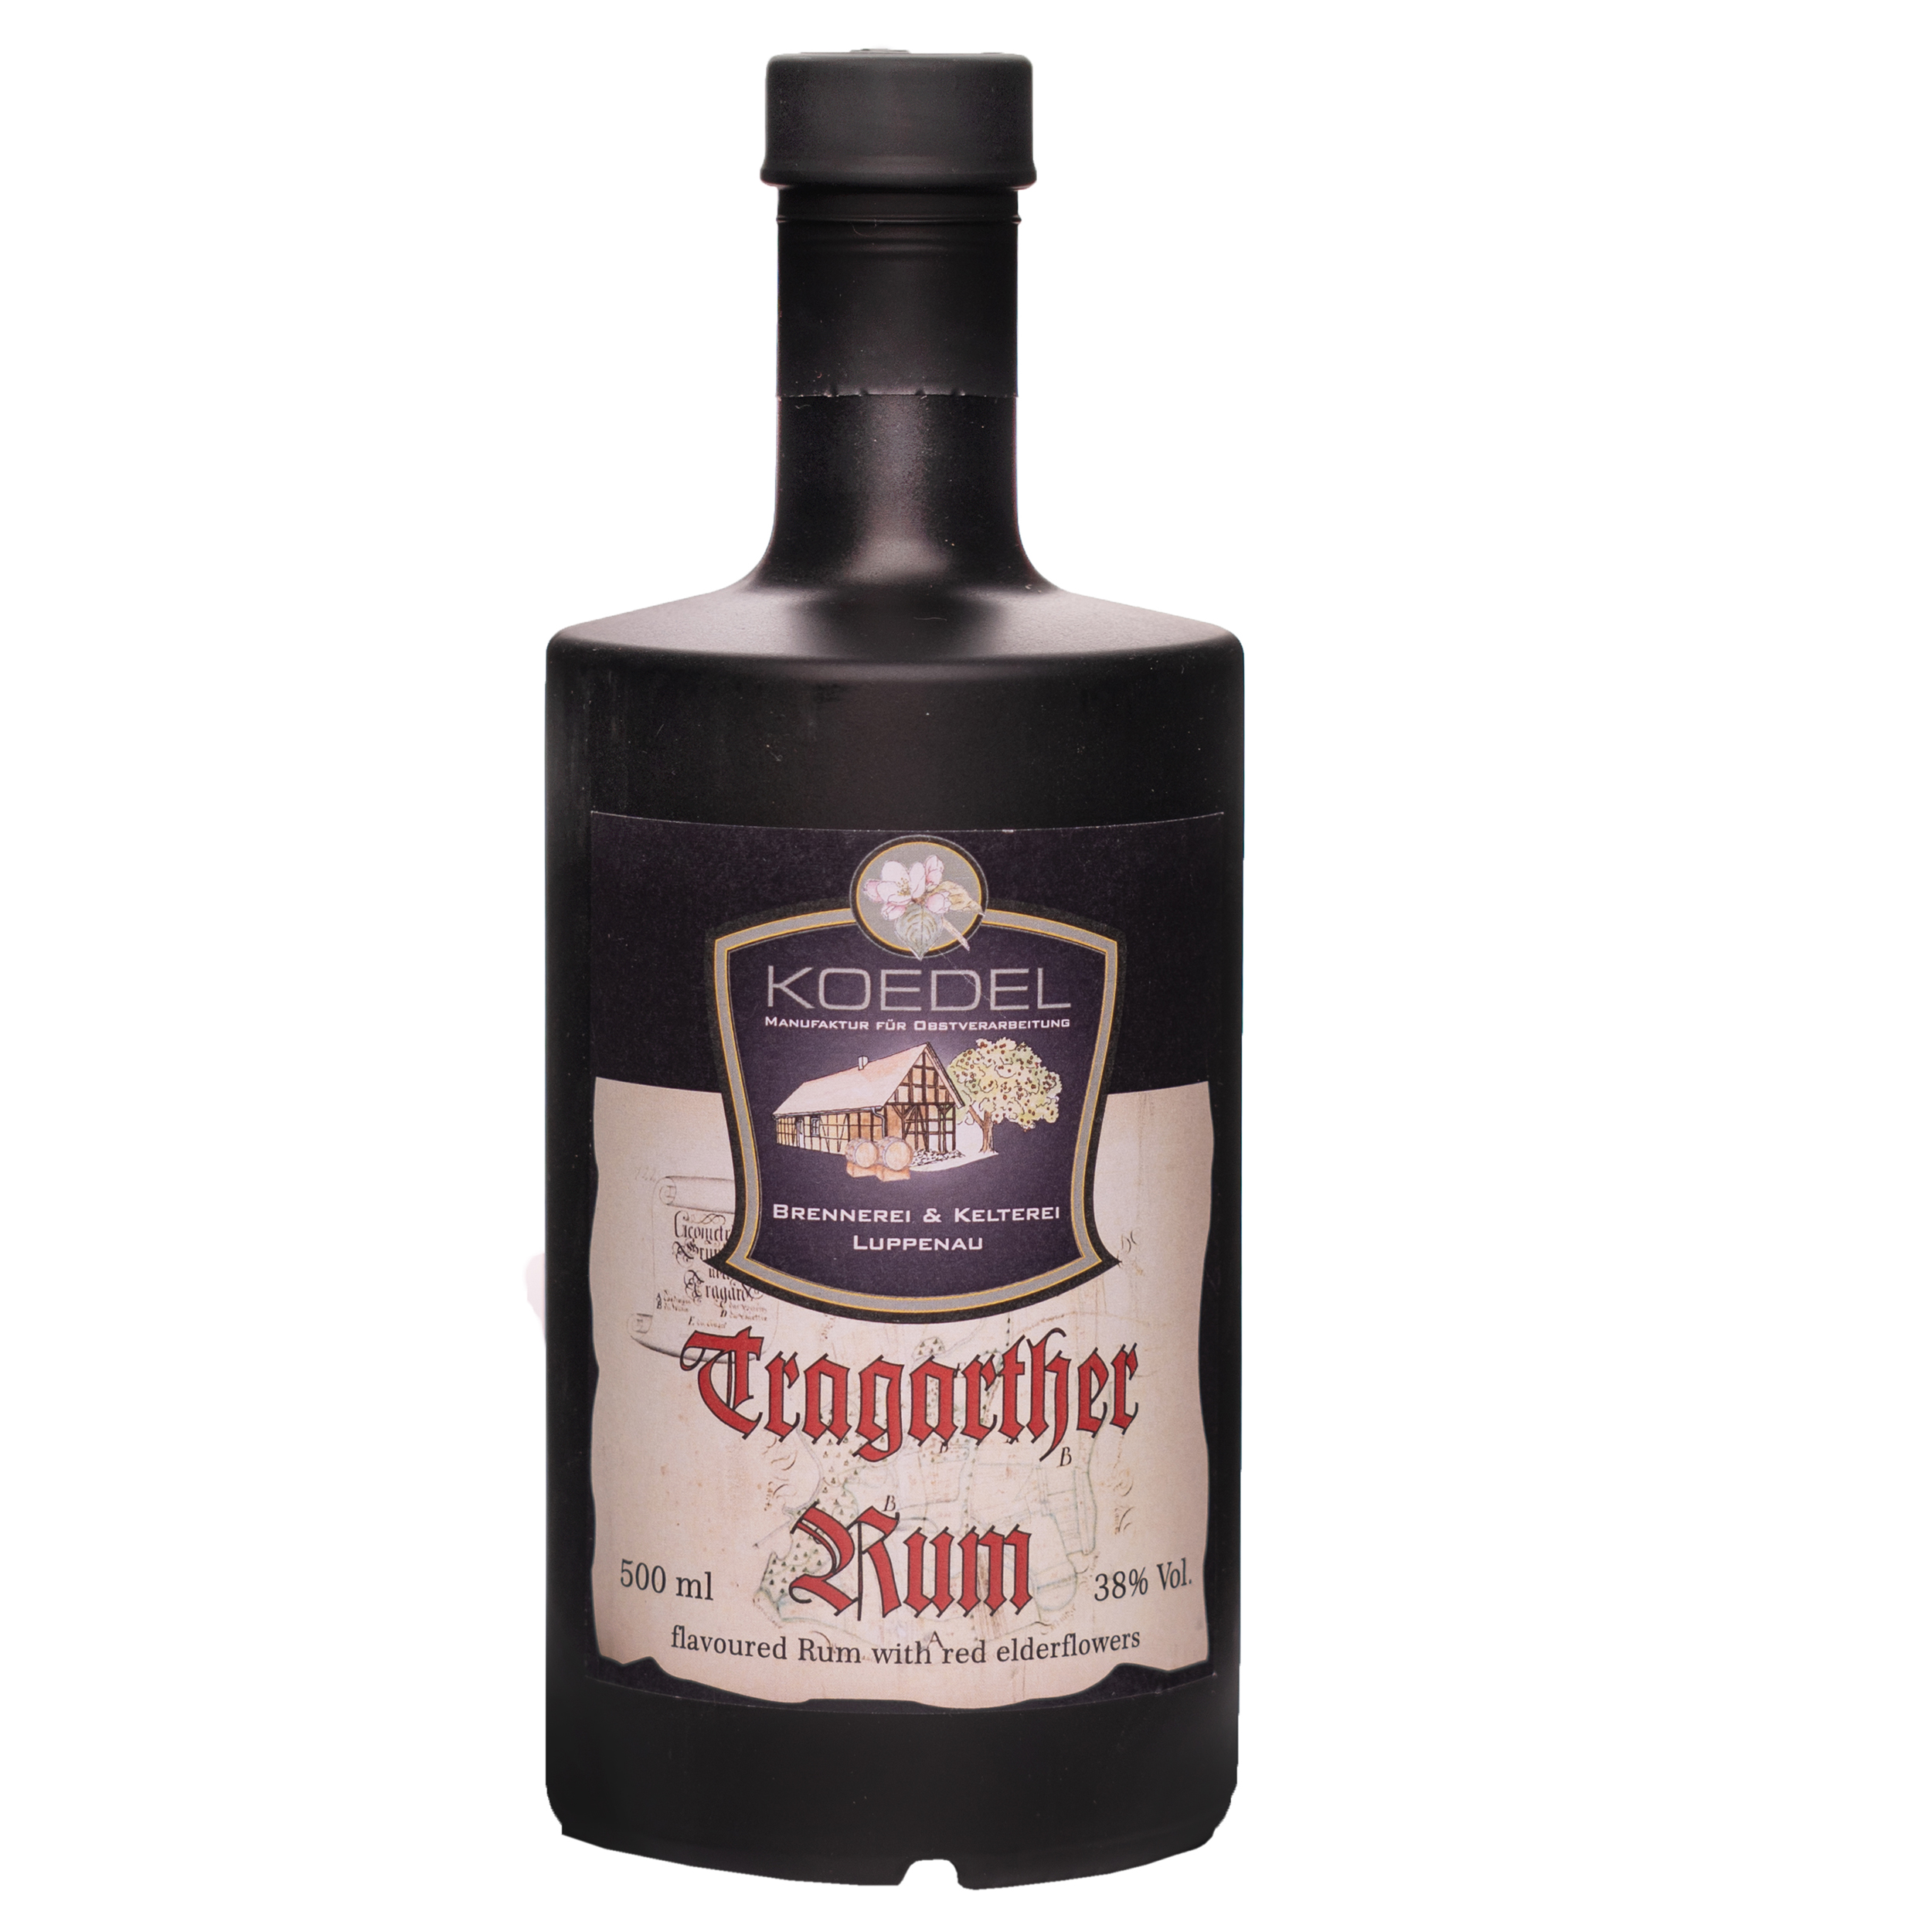 Tragarther Rum, flavoured with red elderflower 500ml